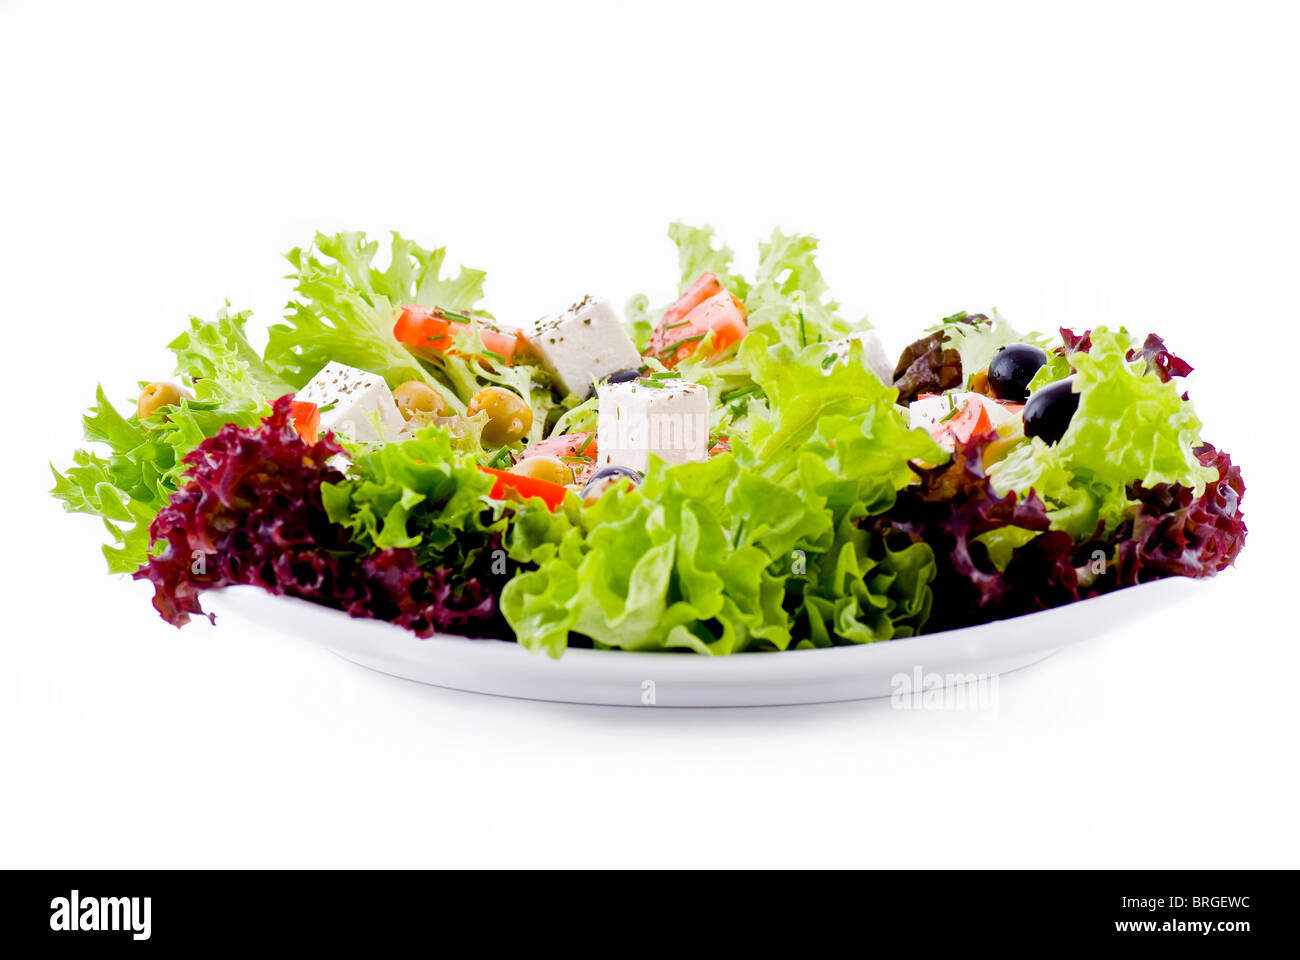 Piatto di verdure fresche - insalate, olive, pomodoro, feta e erbe aromatiche Foto Stock